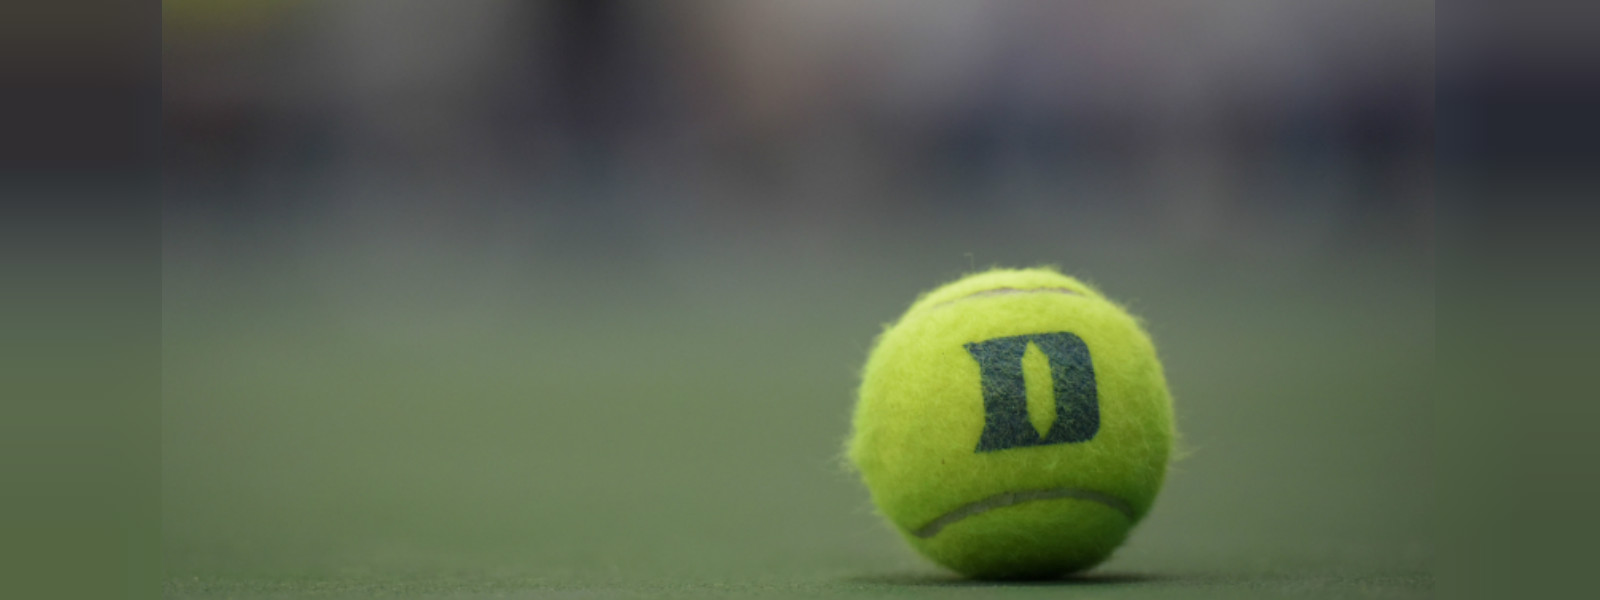 Serena, Nadal & Thiem to U.S. Open quarter finals